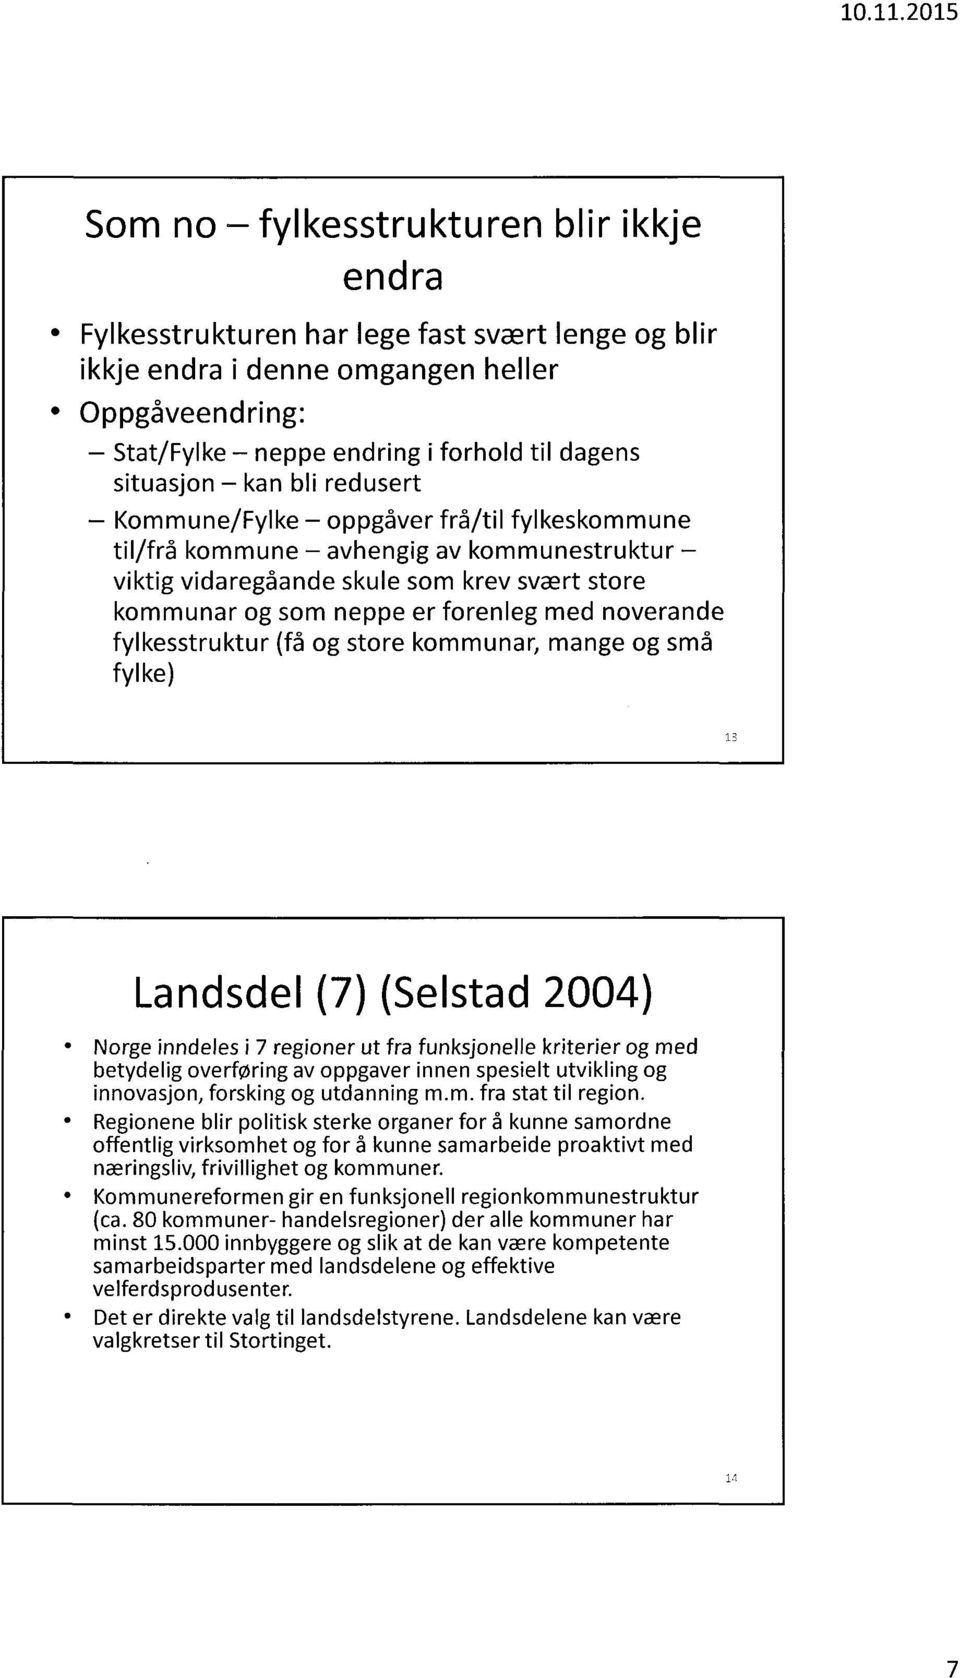 med noverande fylkesstruktur (få og store kommunar, mange og små fylke) Landsdel (7) (Selstad 2004) Norge inndeles i 7 regioner ut fra funksjonelle kriterier og med betydelig overforing av oppgaver